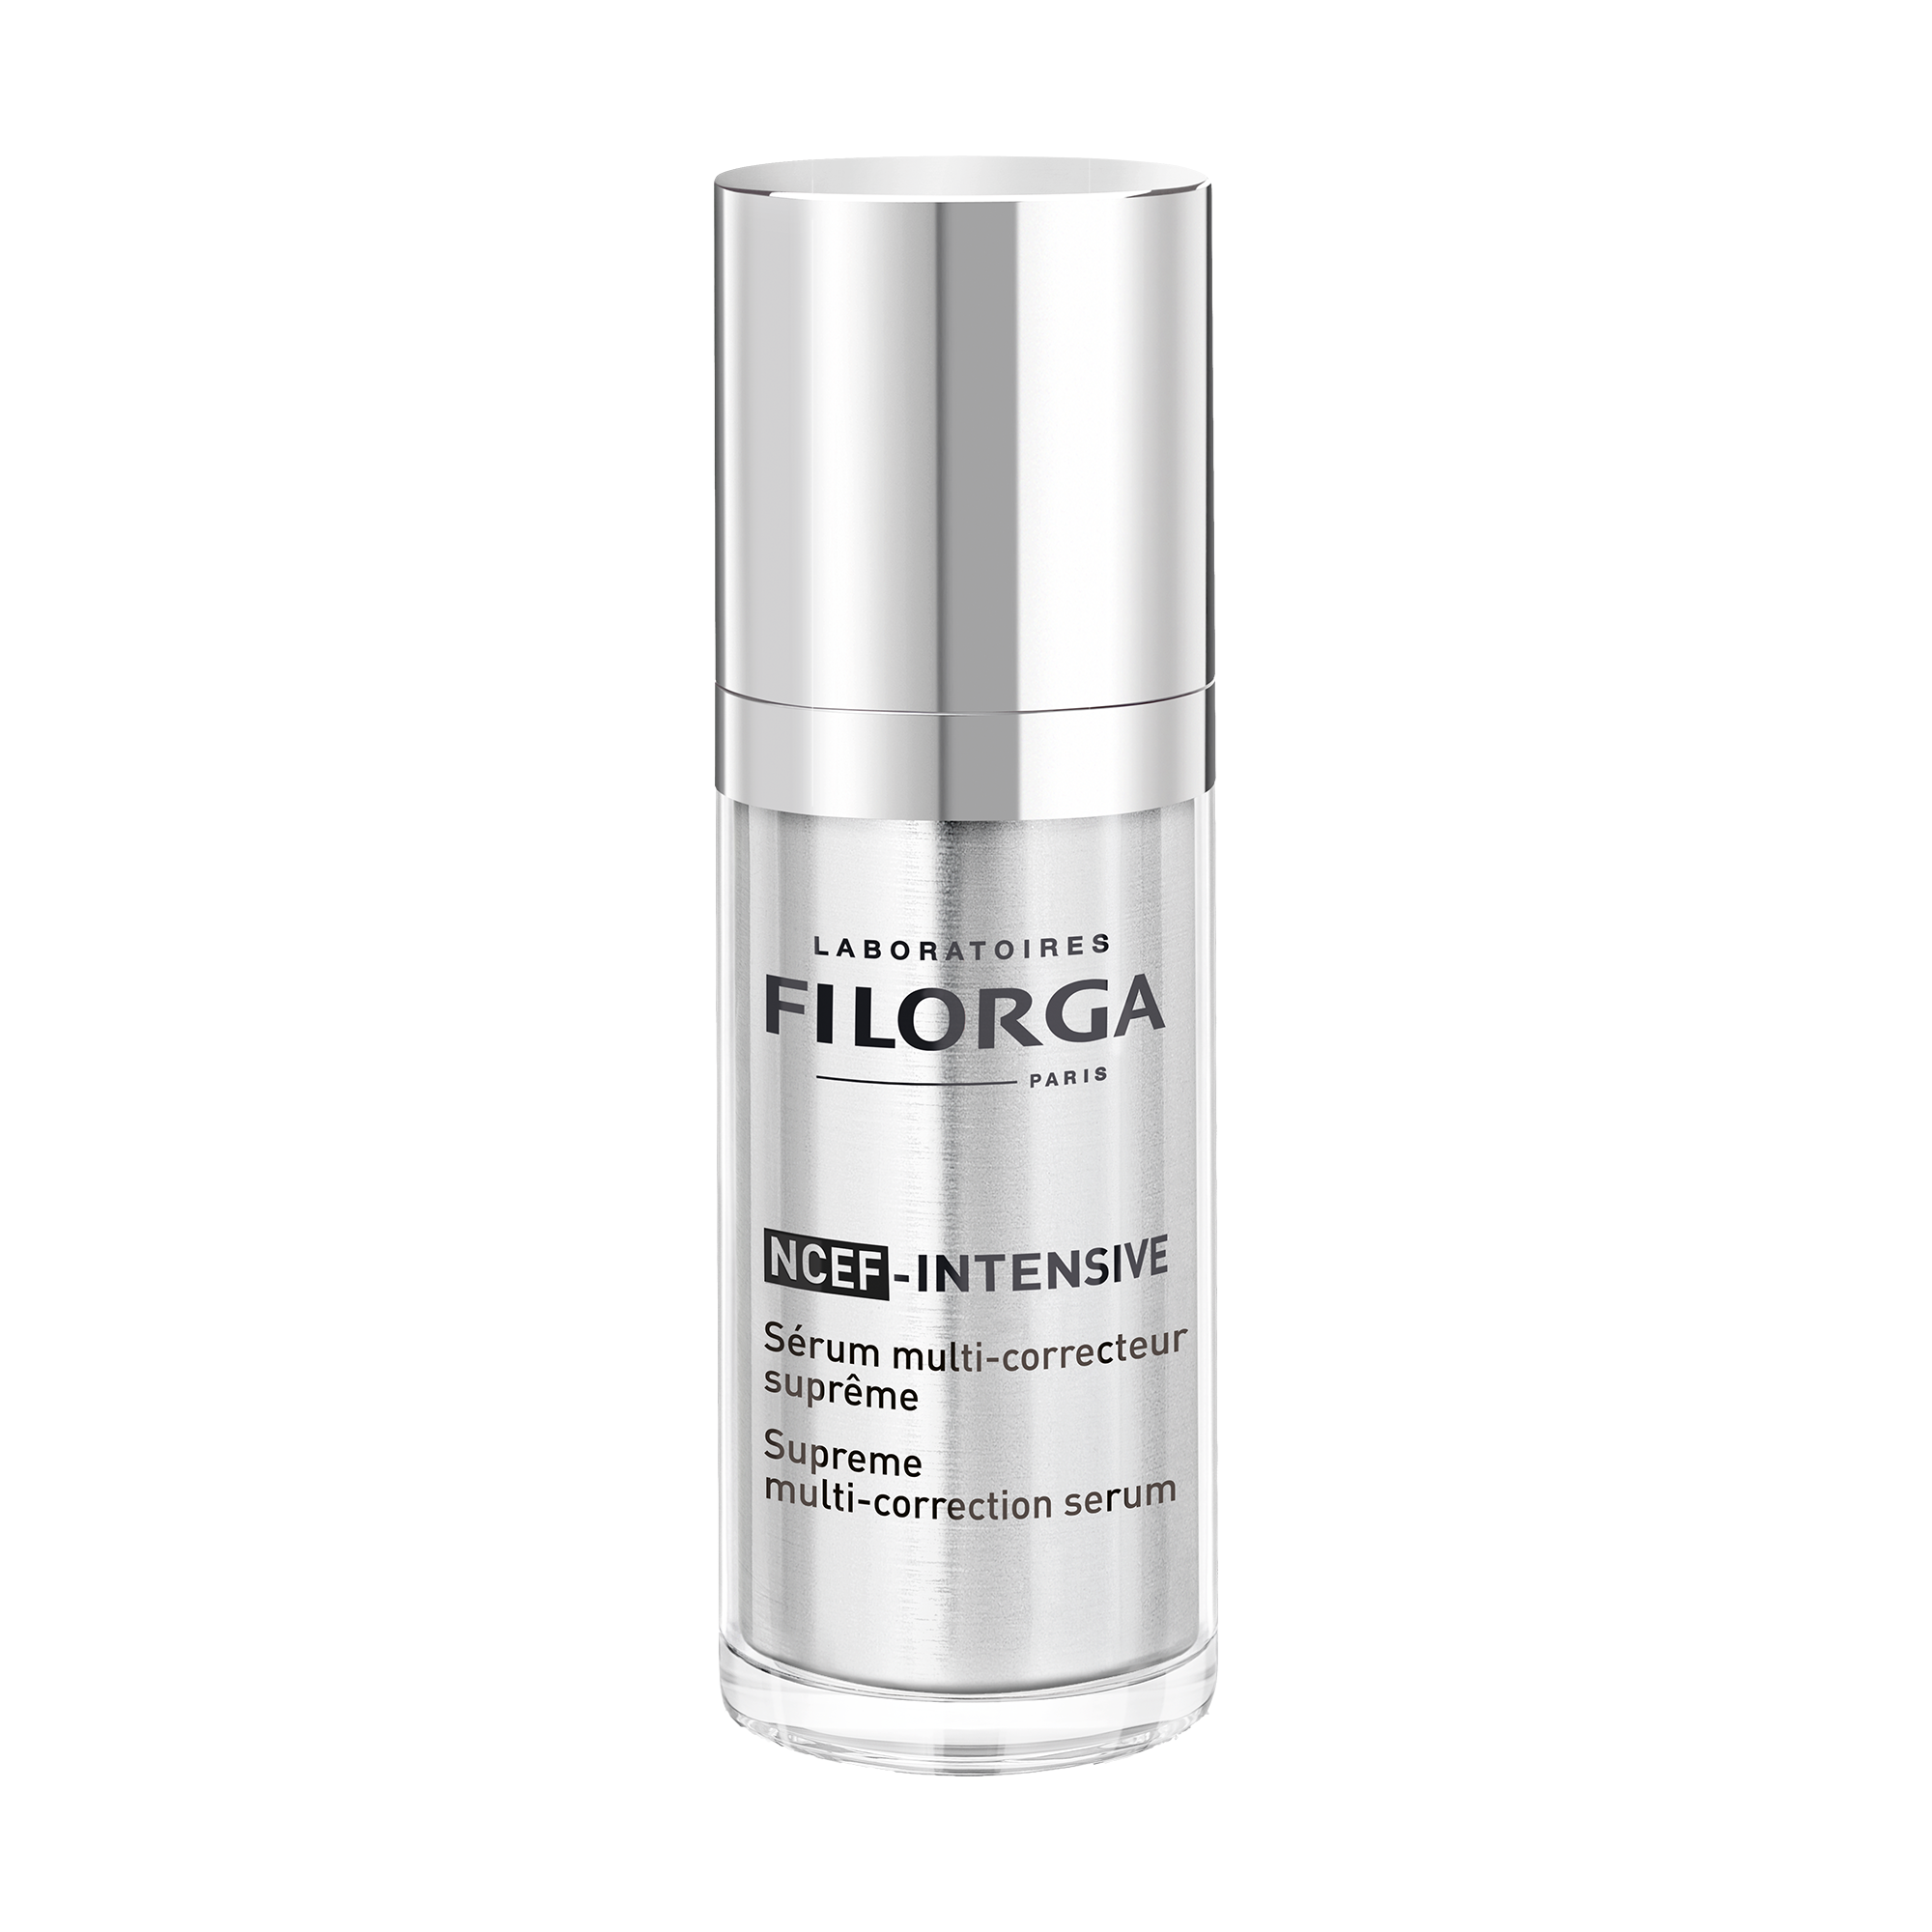 Filorga Сыворотка для лица FILORGA NCEF-INTENSIVE максимальная регенерация и идеальное восстановление,содержит ретинол и витамин С, 30 мл 1V1482_1.png